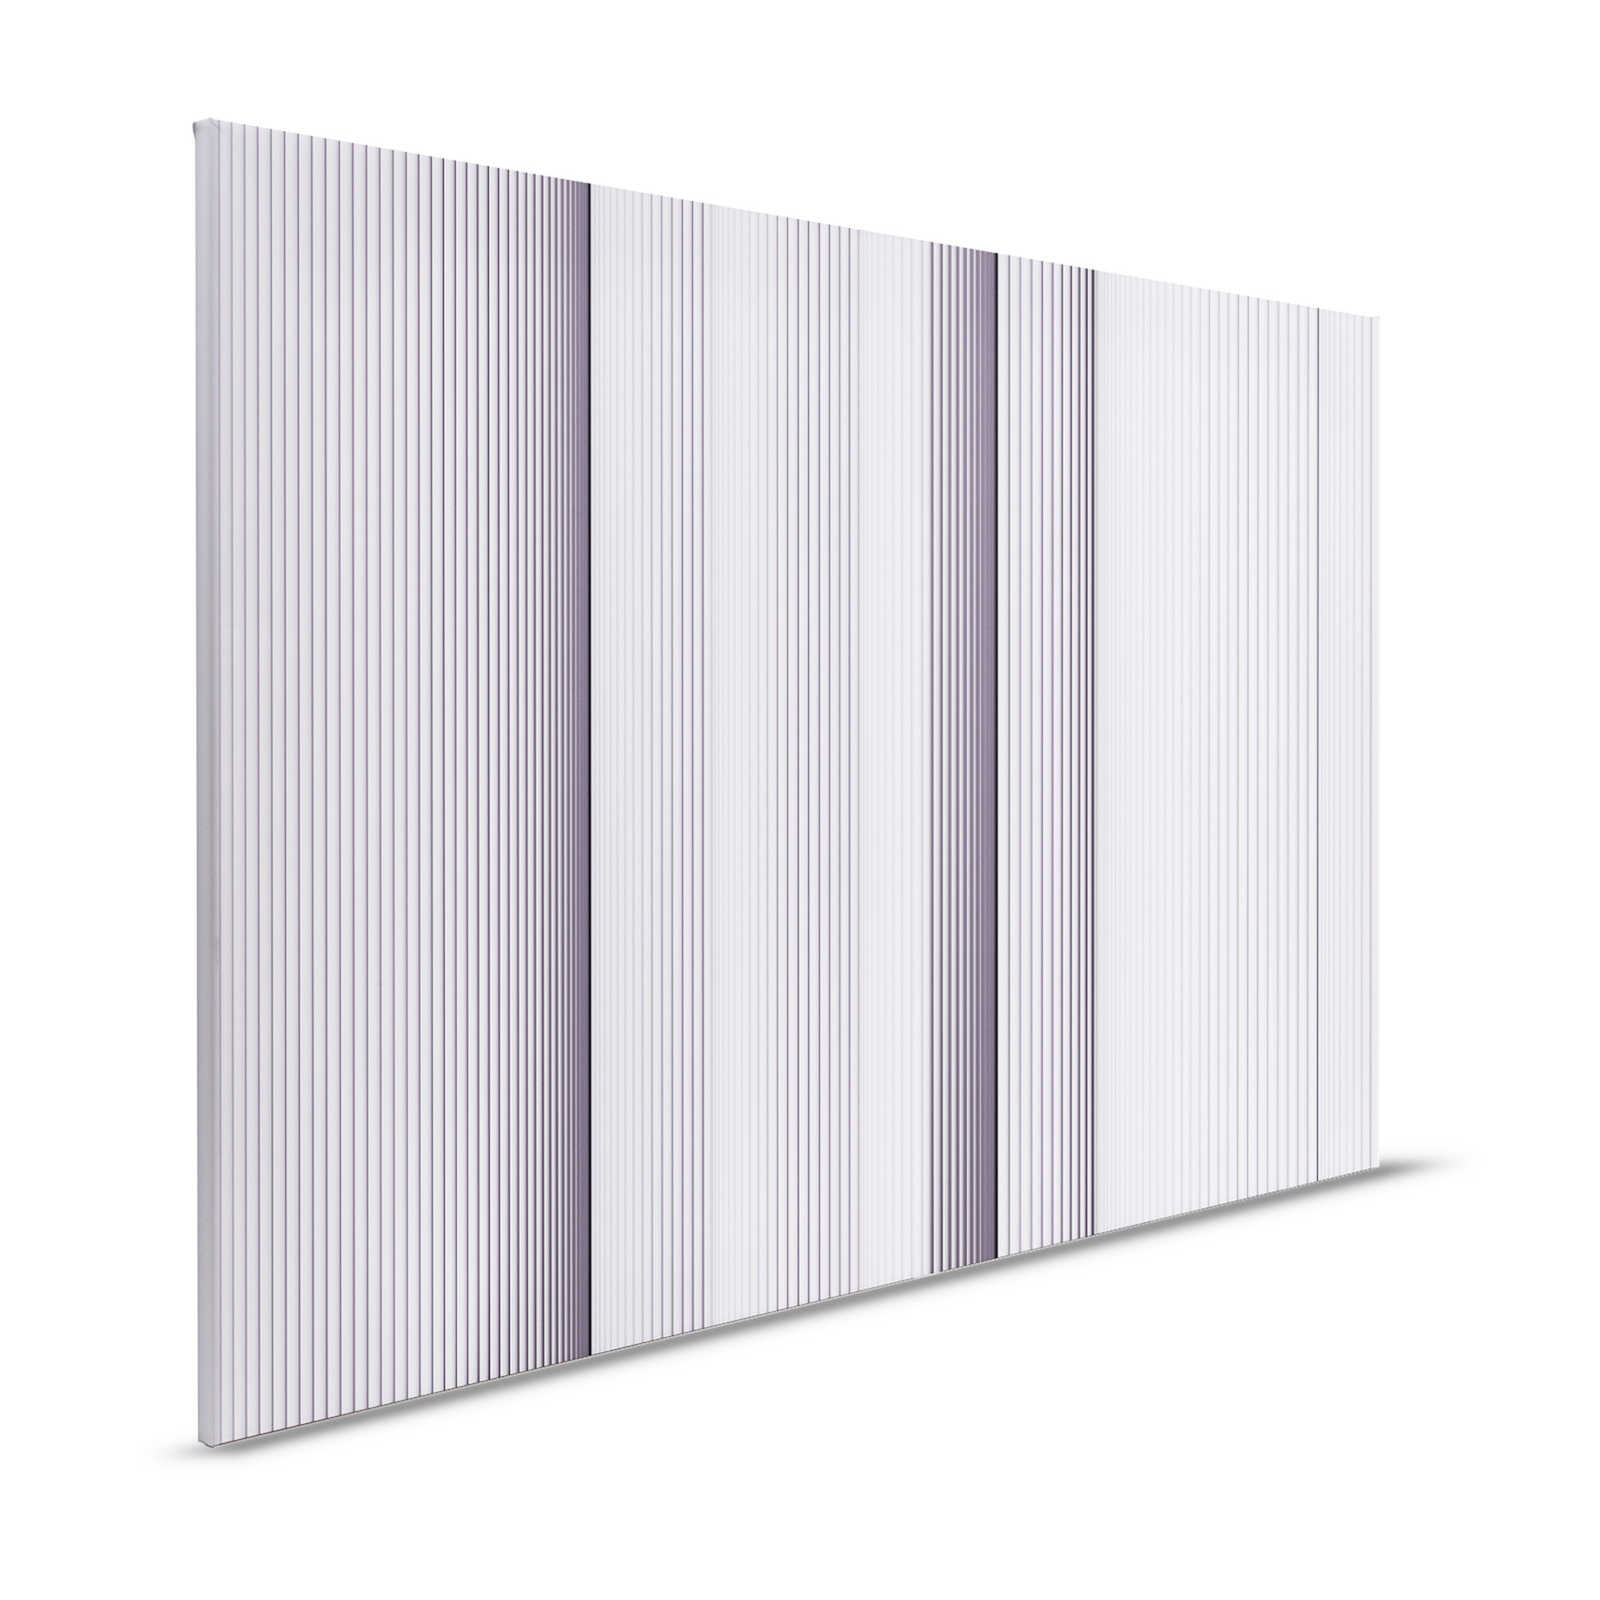 Magic Wall 1 - toile à rayures effet 3D illusion, violet et blanc - 1,20 m x 0,80 m
